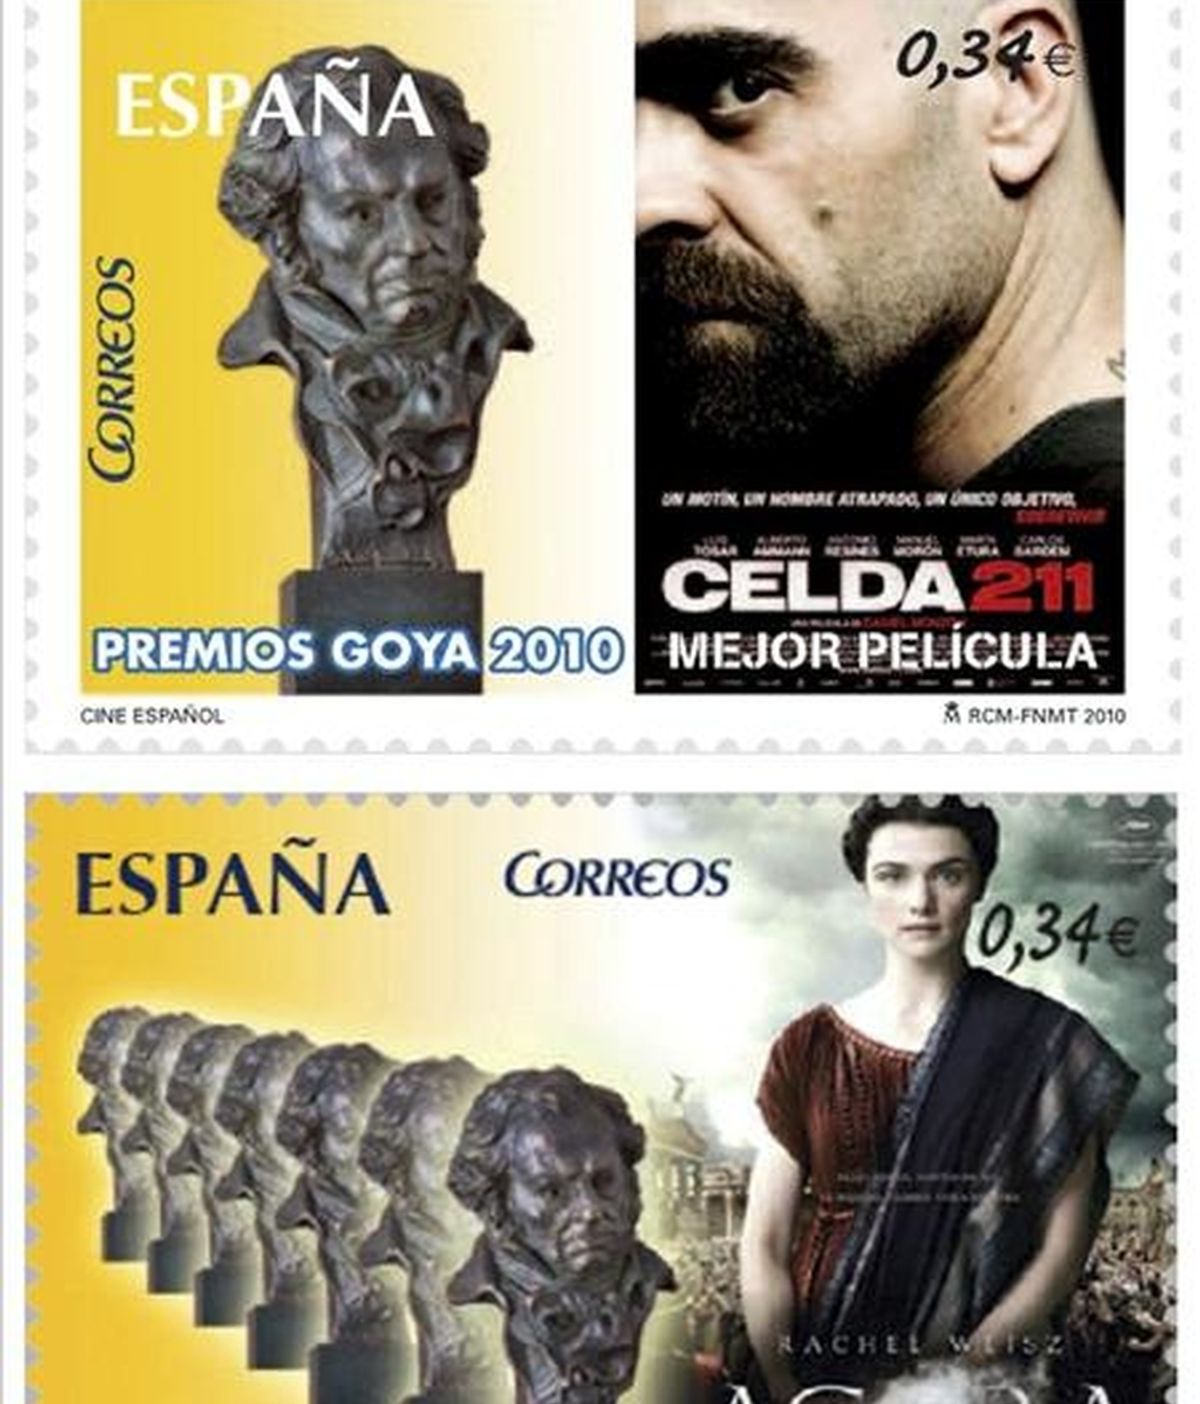 Las películas "Celda 211", de Daniel Monzón, y "Agora", de Alejandro Amenábar, tienen ya su sello postal, gracias al acuerdo entre la Academia de Cine y Correos, que inician así el lanzamiento de una la primera colección filatélica dedicada al cine español. EFE/Archivo